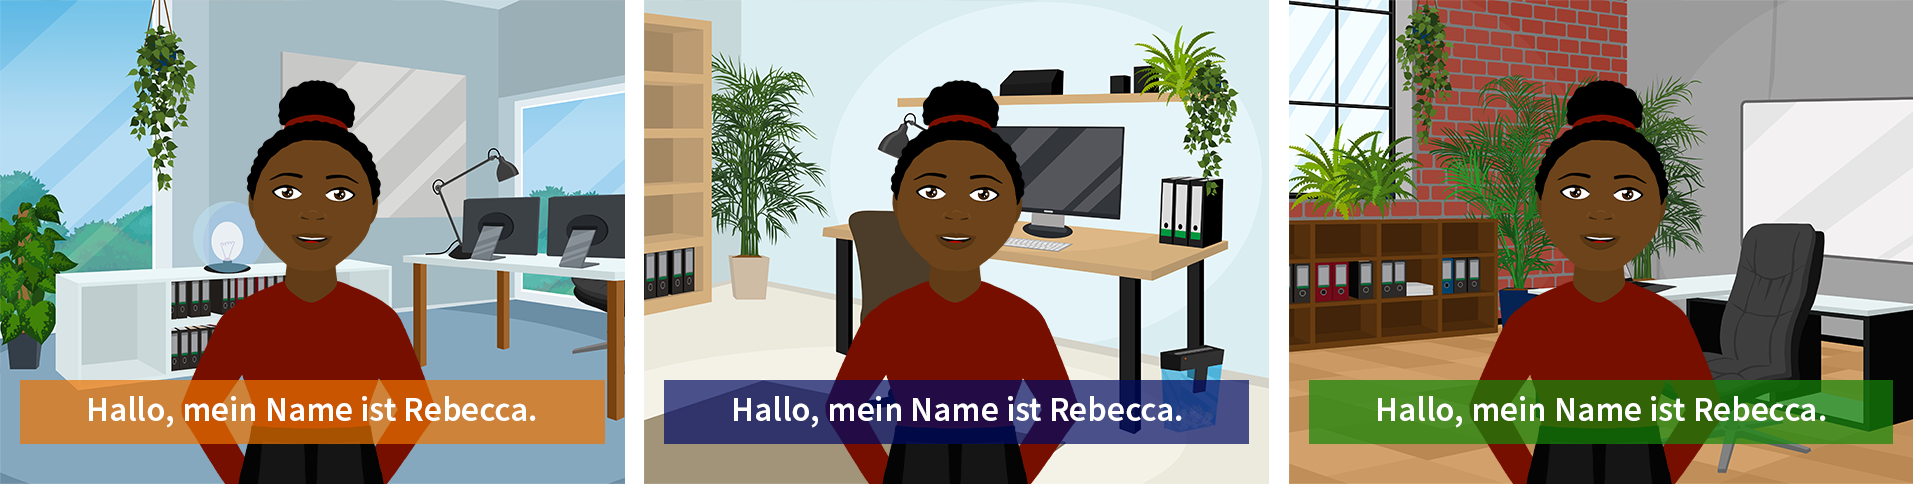 Rebecca dreimal in der selben Situation, mit verschiedenen Hintergründen und Farben im Untertitel